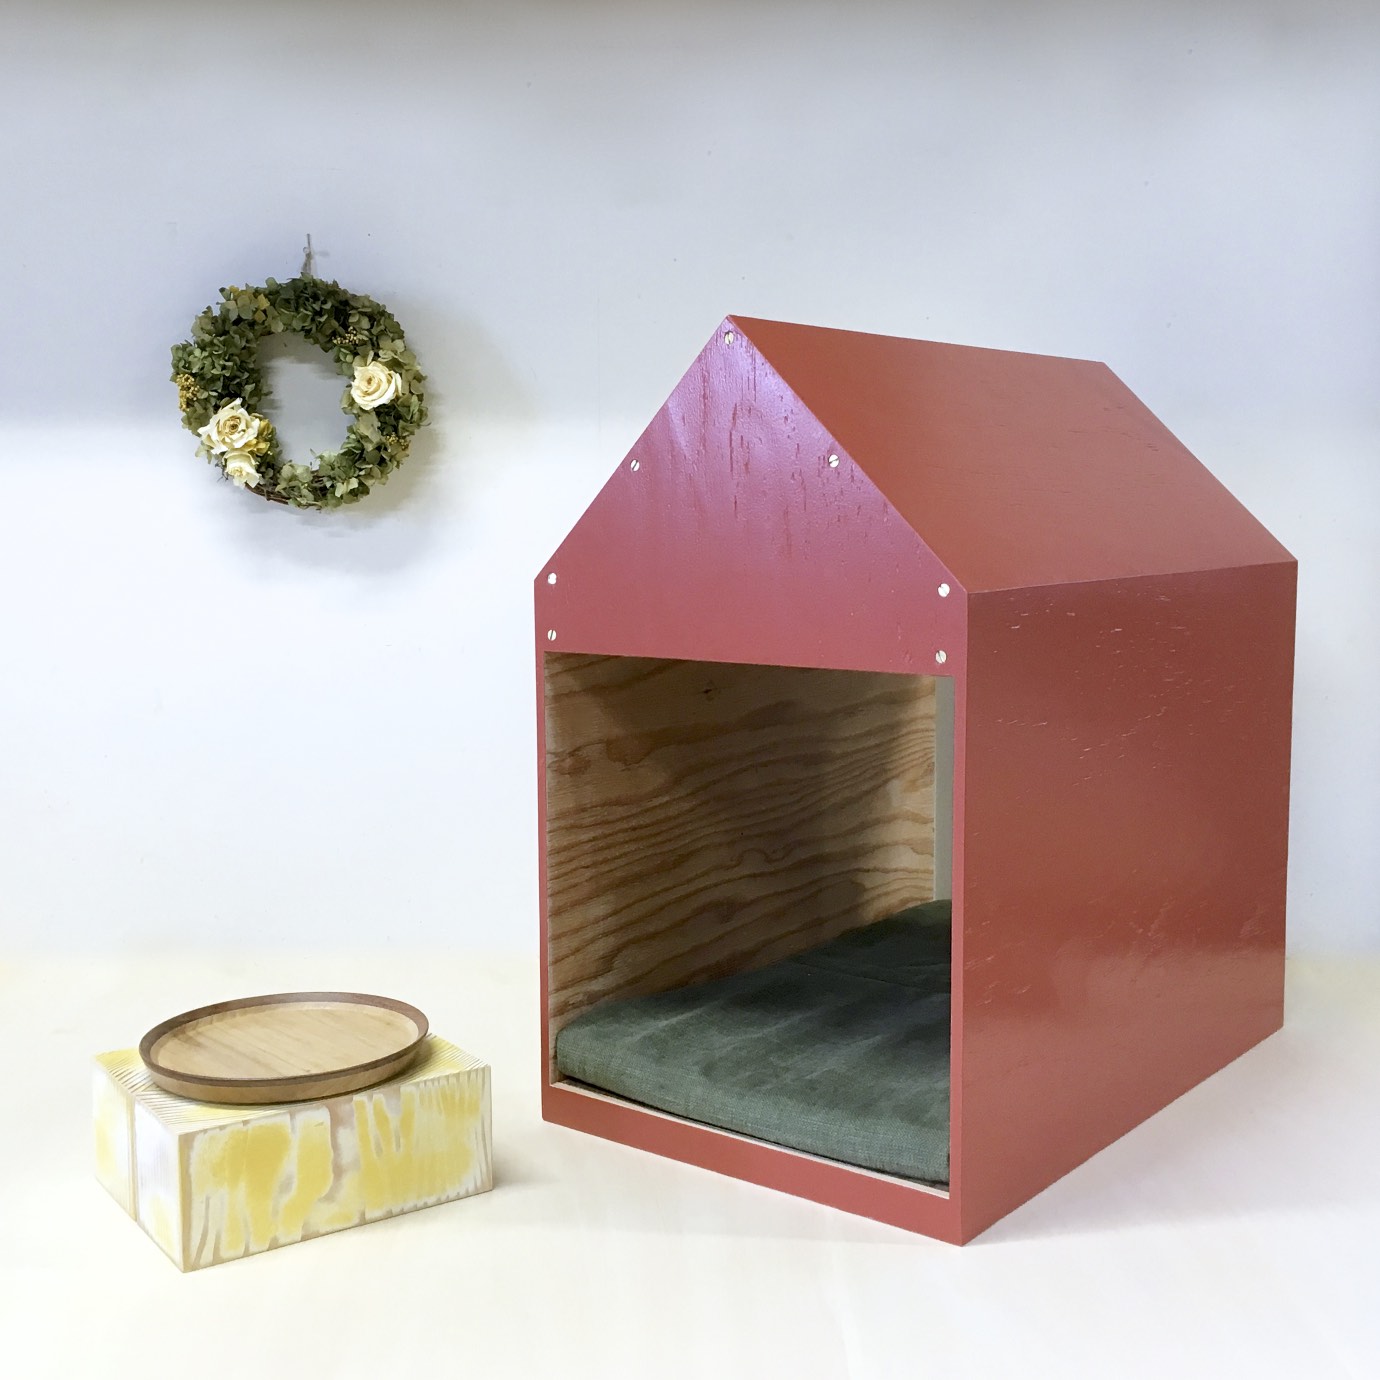 インテリアになる犬小屋 ドッグハウス ペットハウス 木製 レッド 室内用 Iichi ハンドメイド クラフト作品 手仕事品の通販